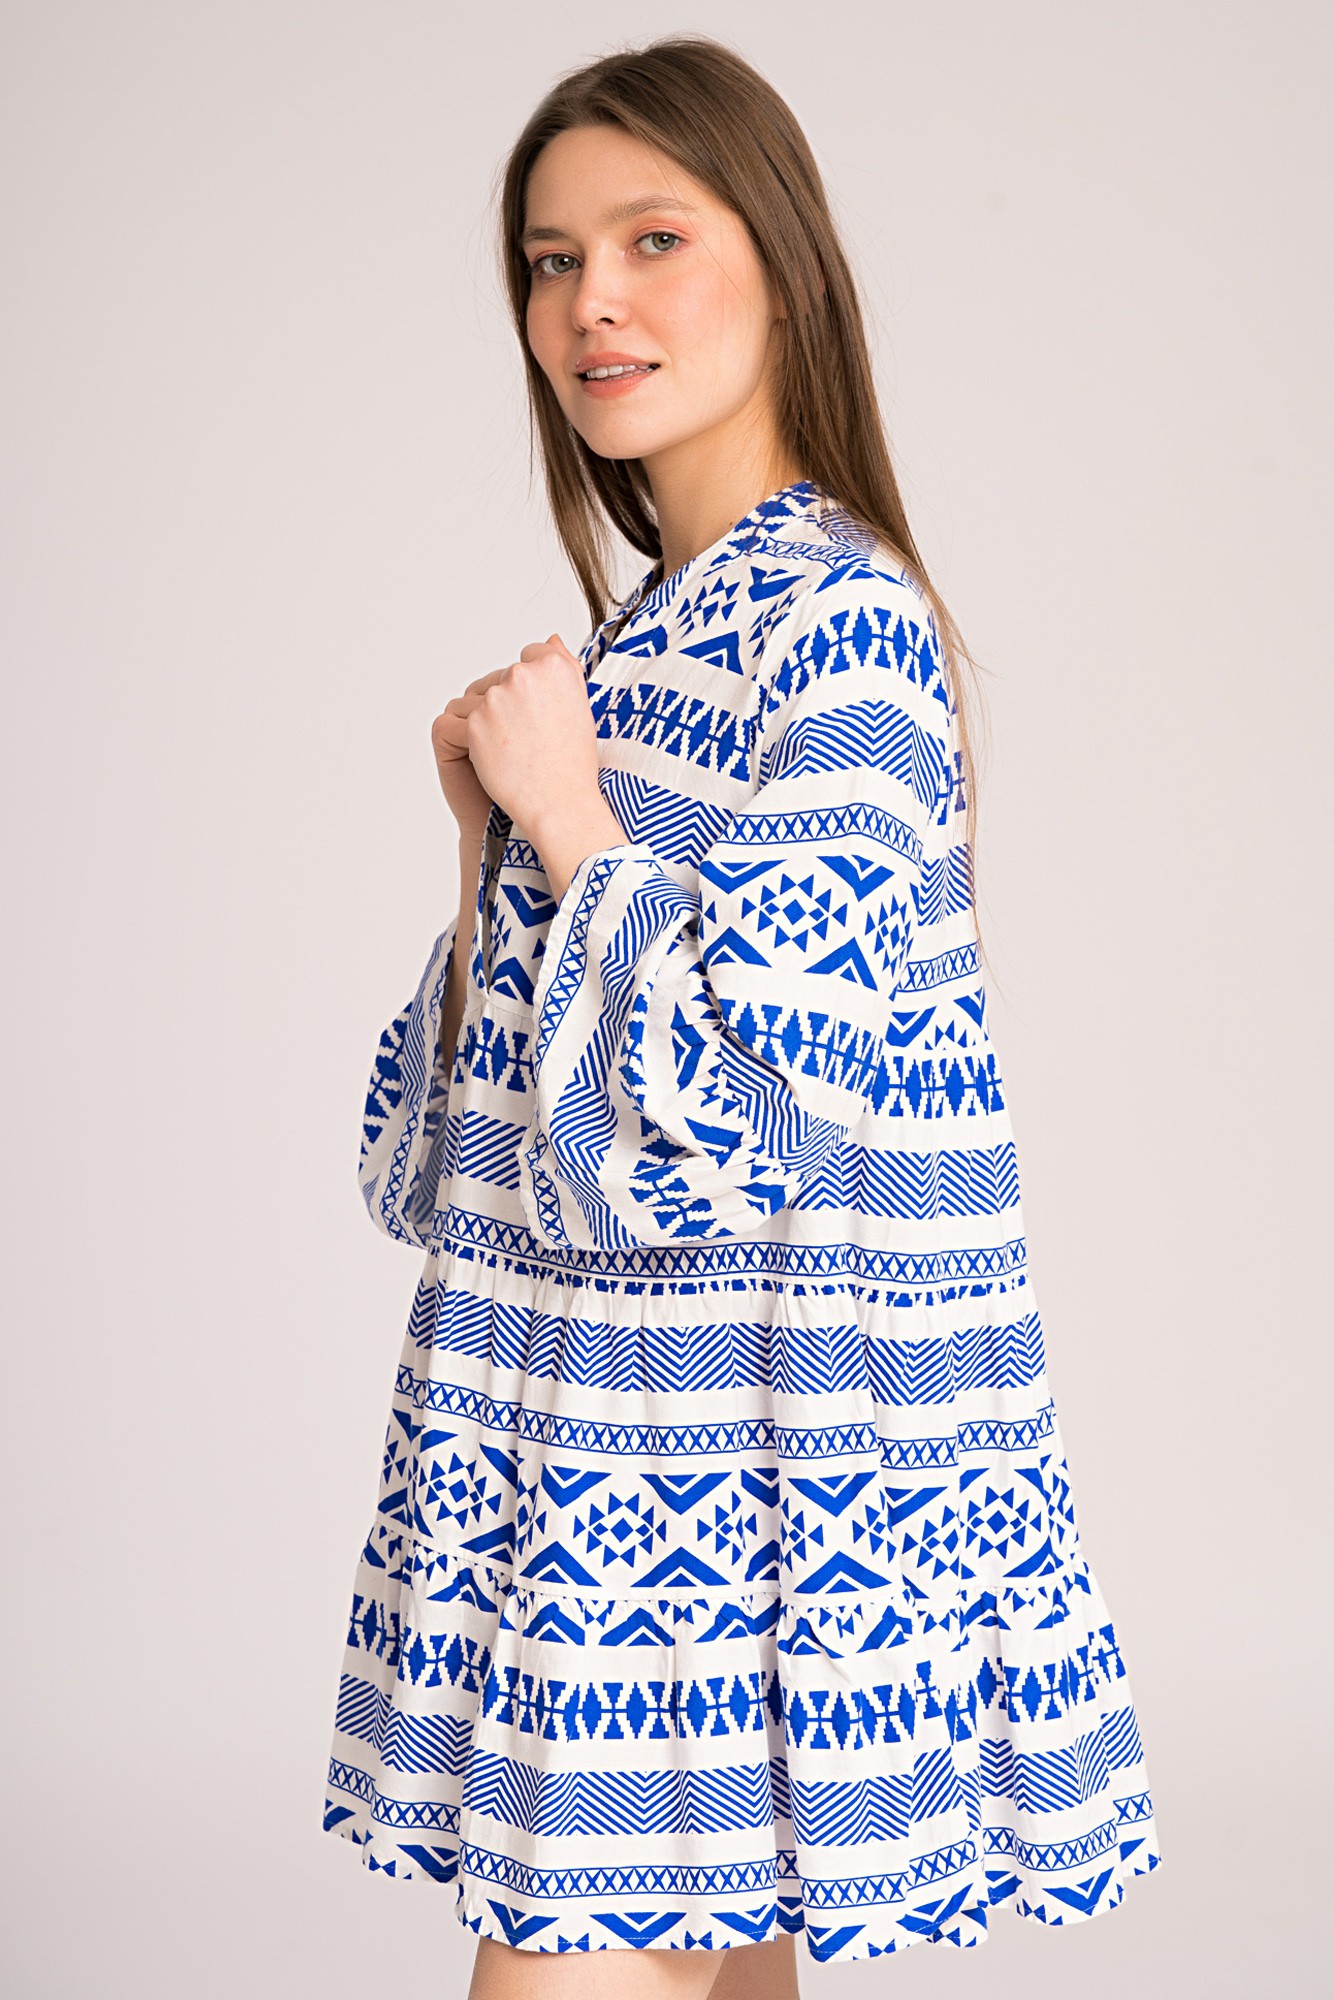 Tunica tip rochie alba cu imprimeu geometric albastru